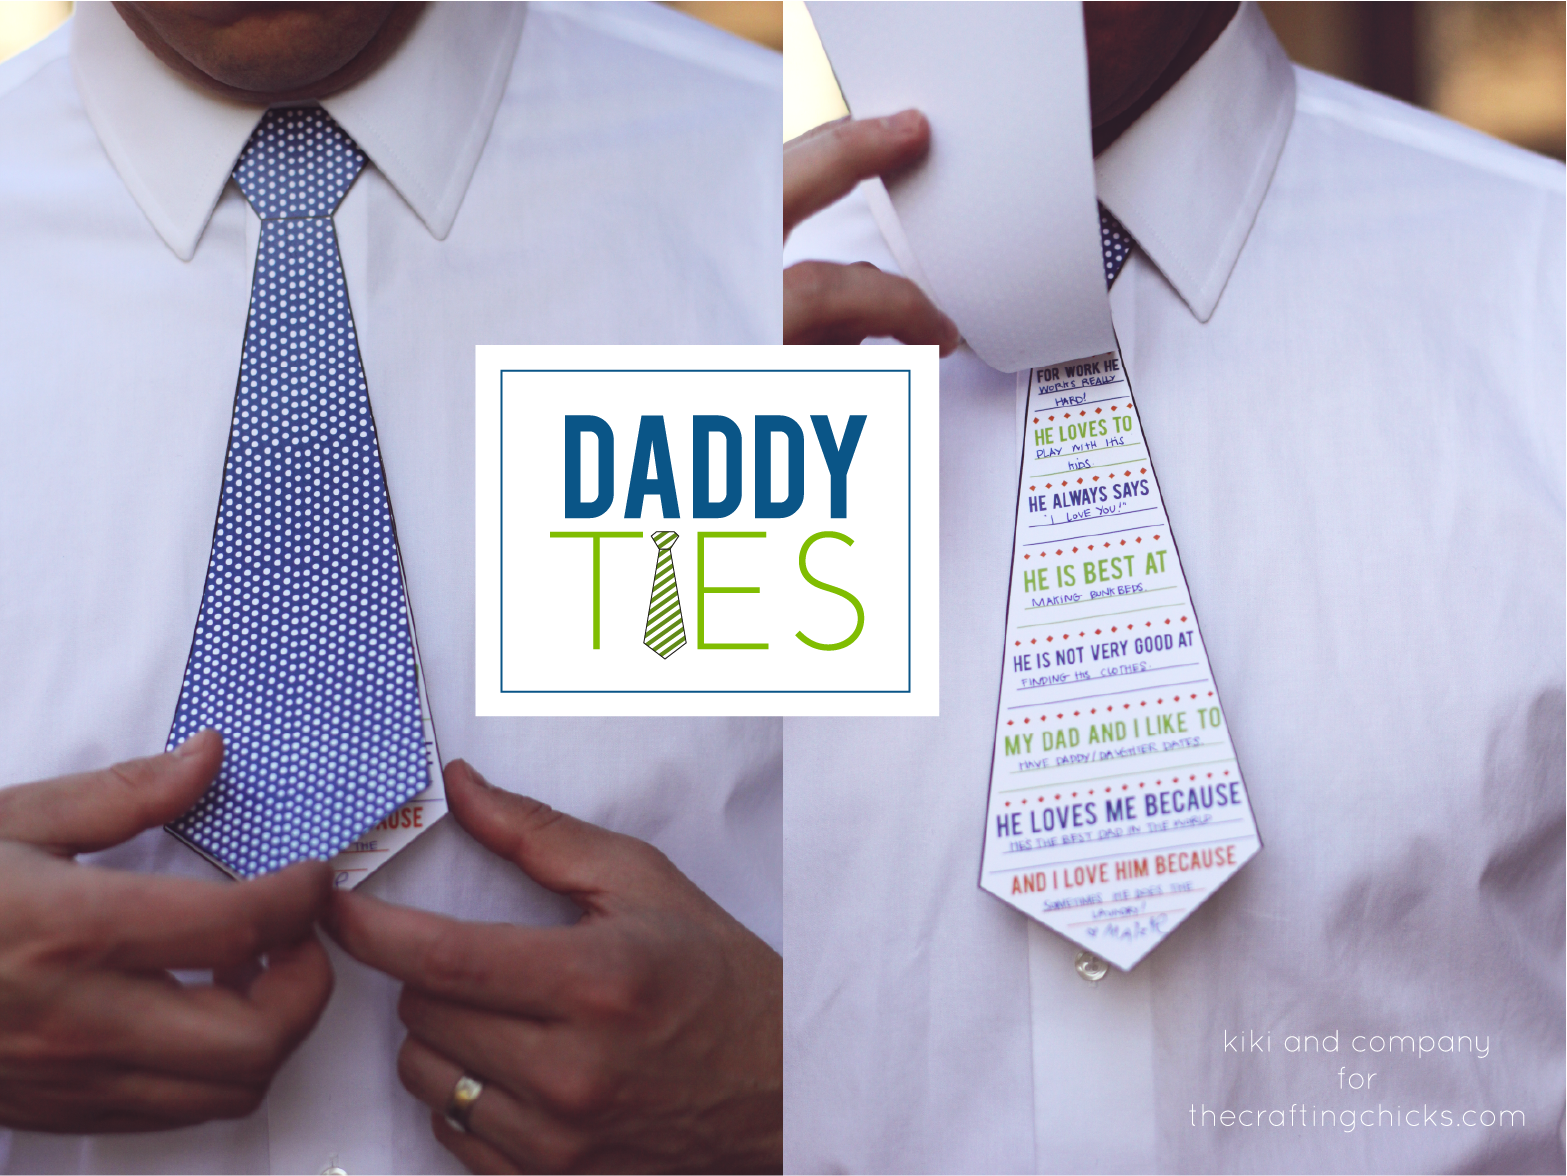 daddy-ties-father-s-day-kiki-company